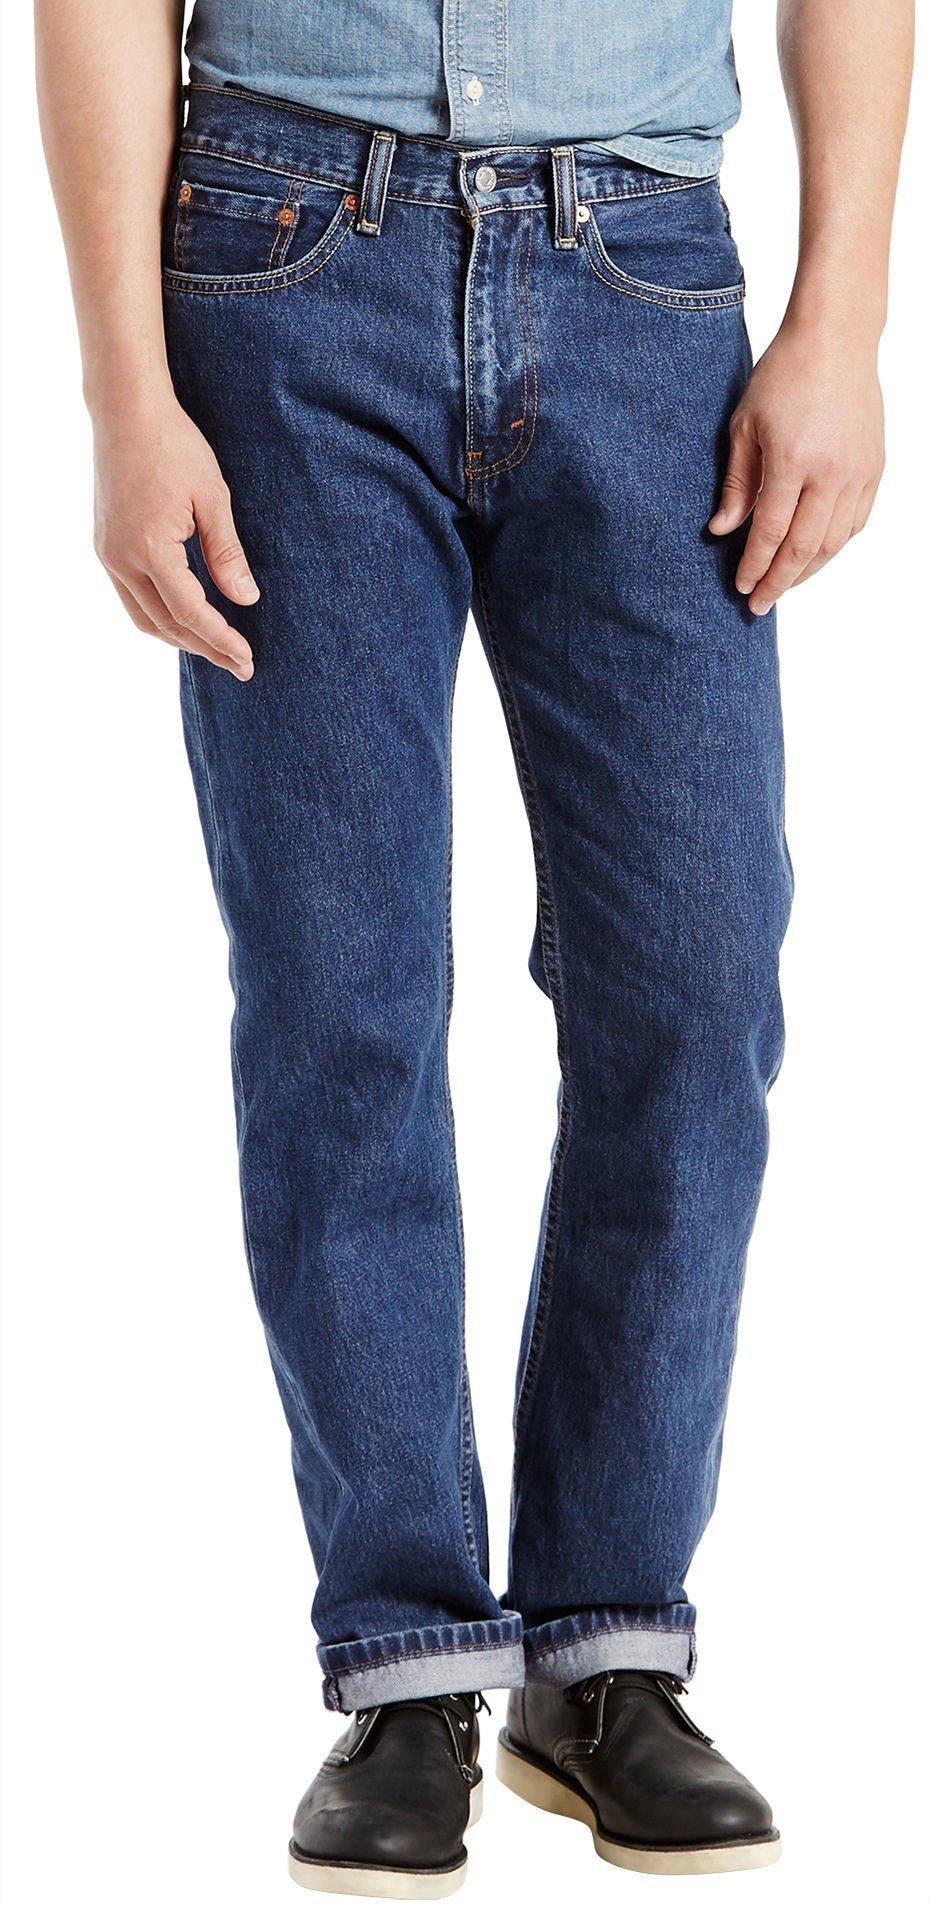 Levi's Mens 505 Regular Fit Jeans | Bealls Florida